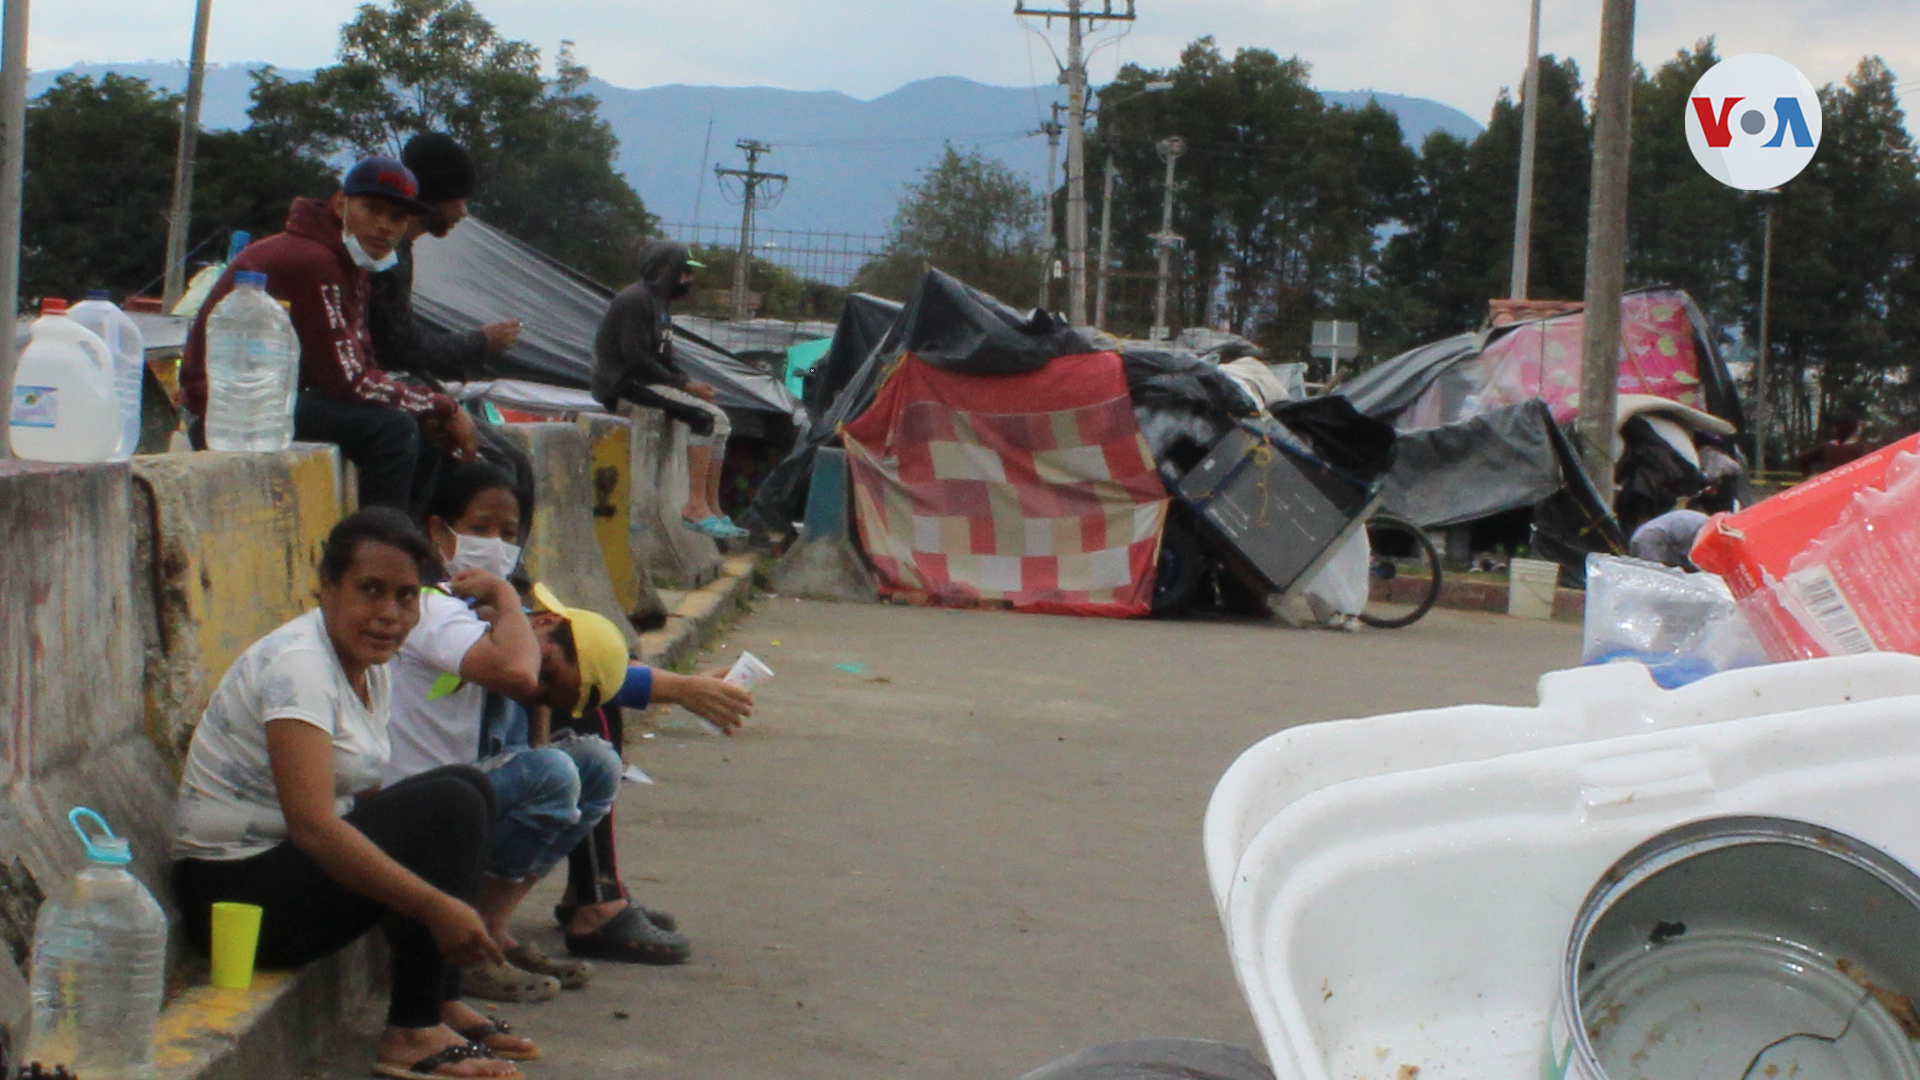 “Ayuda para llegar a Cúcuta”: Venezolanos arman improvisado campamento para regresar a su país